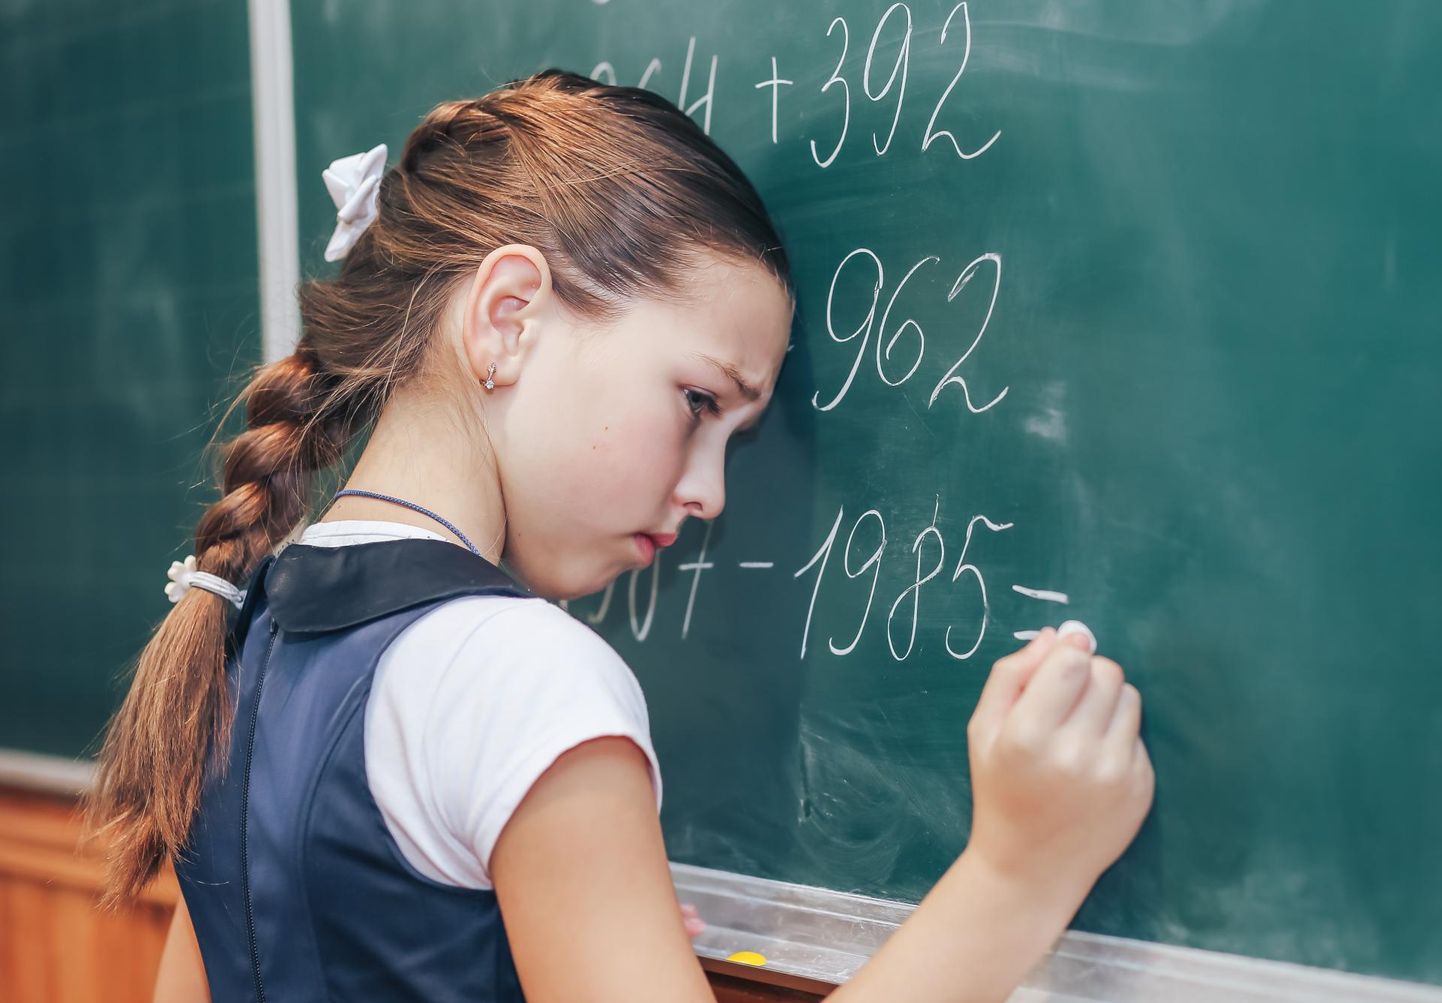 Tüdrukud usuvad oma matemaatilistesse võimetesse vähem kui poisid, seetõttu valivad neiud ka harvemini tehnoloogiaeksperdi või insenerikarjääri.